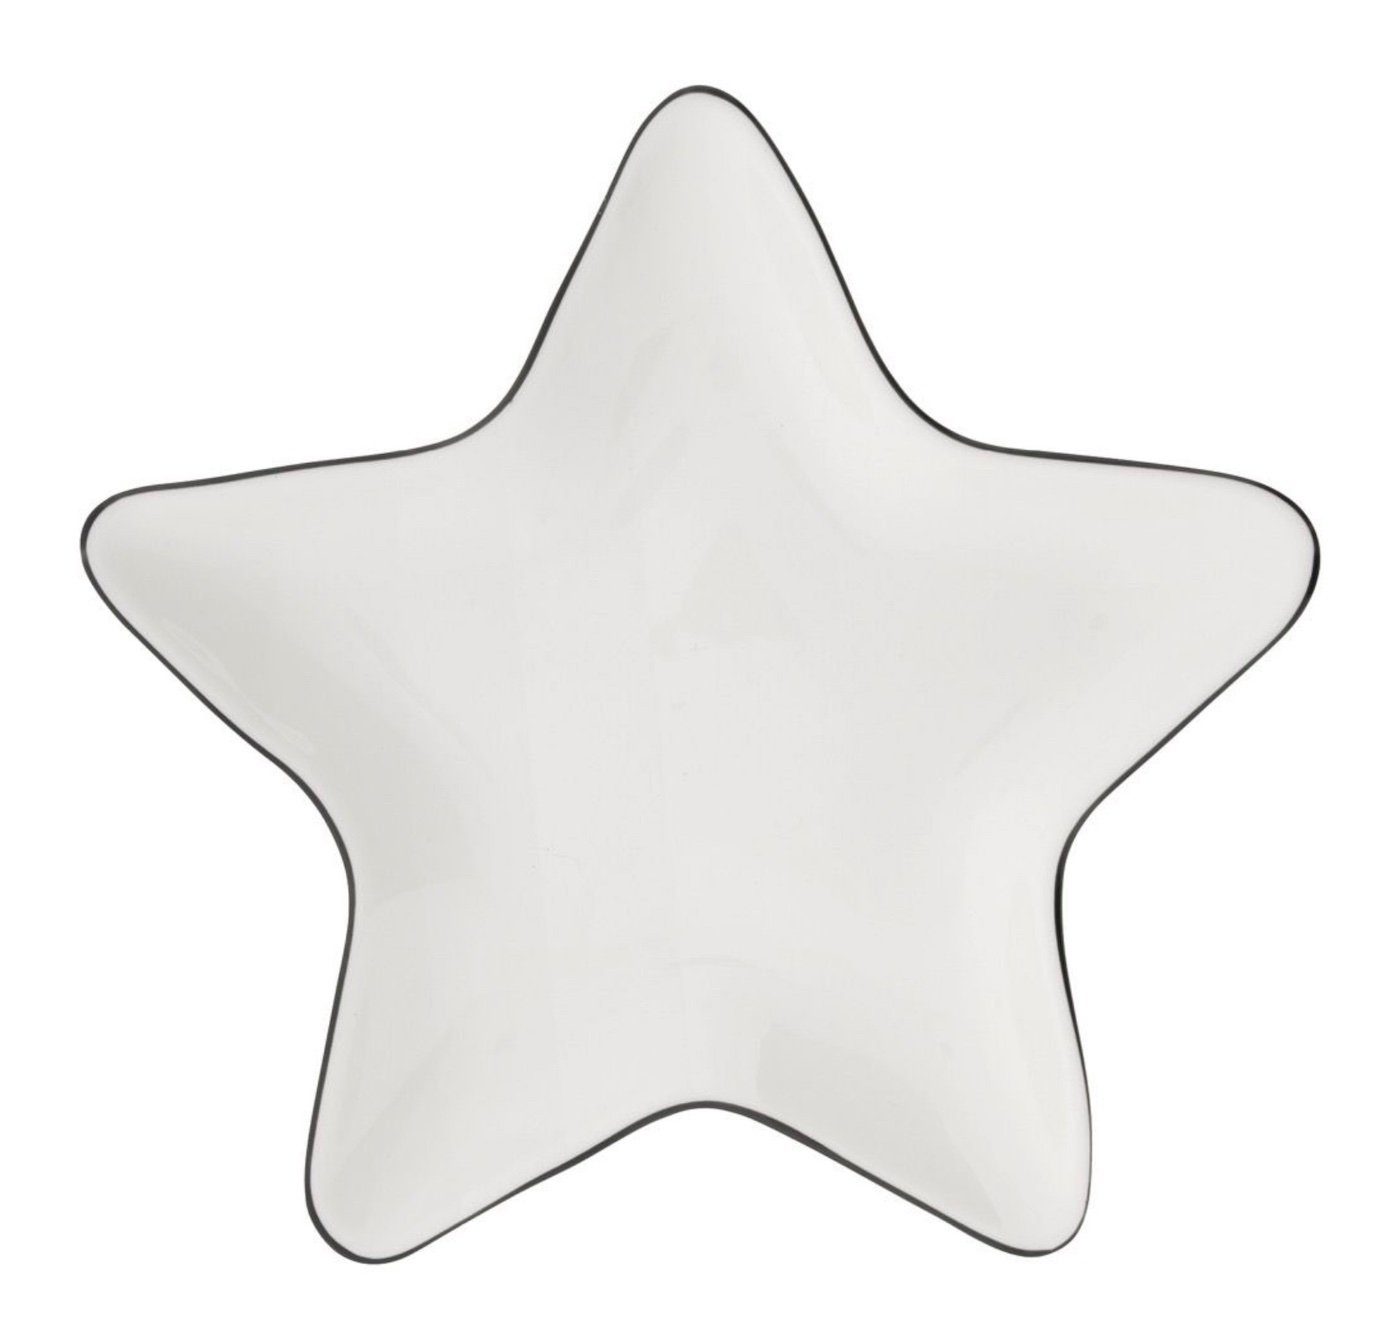 18x18cm, Star handbemalt Bastion Dekoteller Keramik weiß Collections schwarz Teller